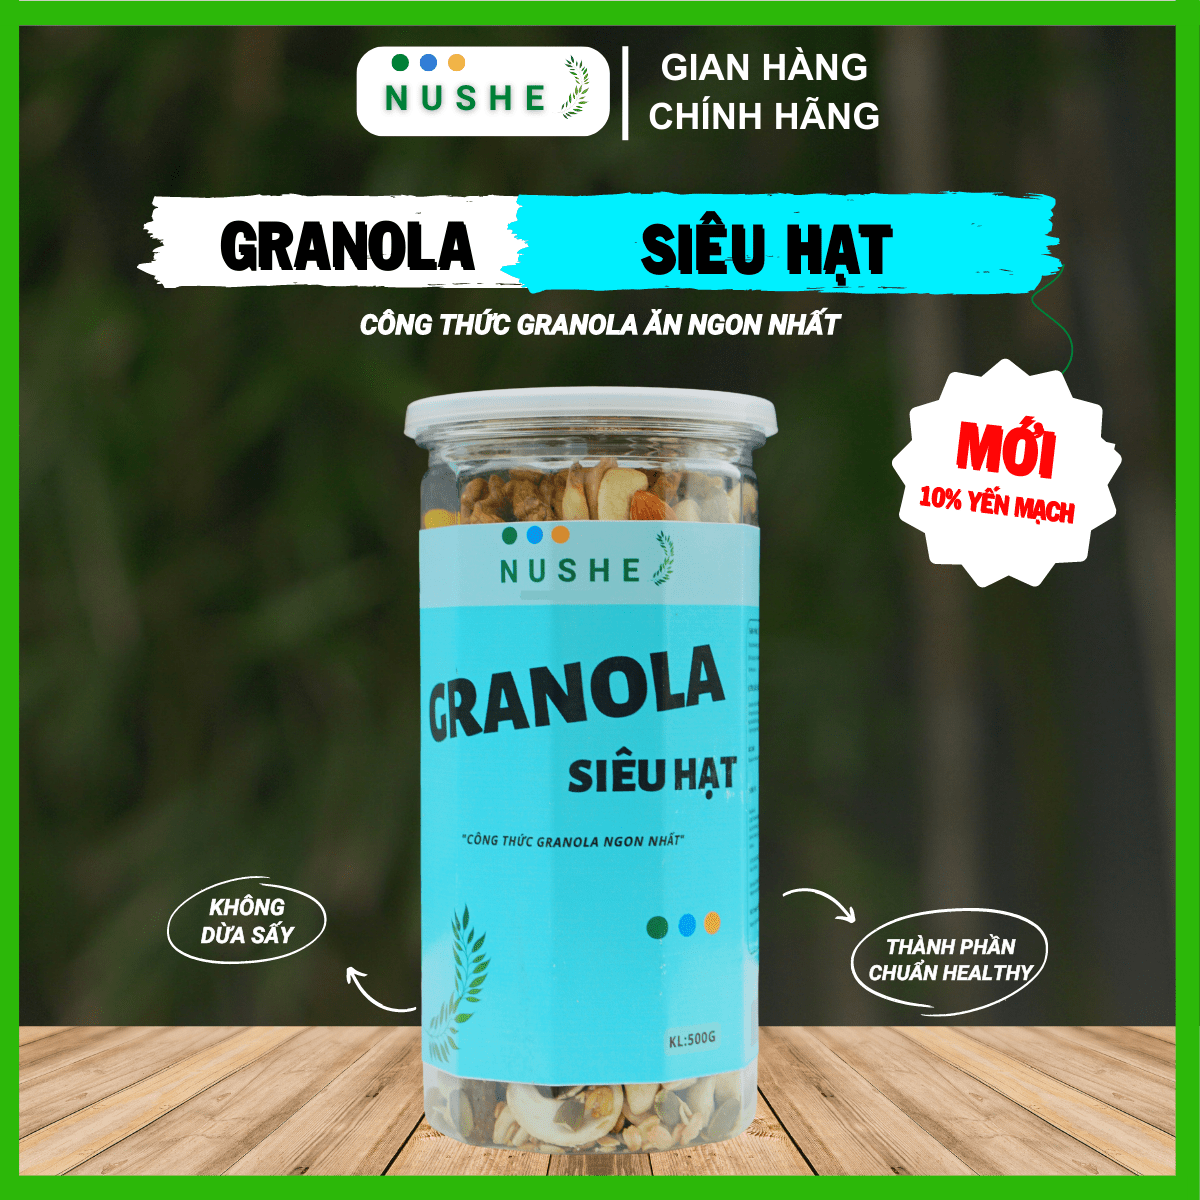 Granola siêu hạt Nushe Food, 10% Yến Mạch, Ngũ cốc vip, Hộp 500g, Eat clean, Healthy Food